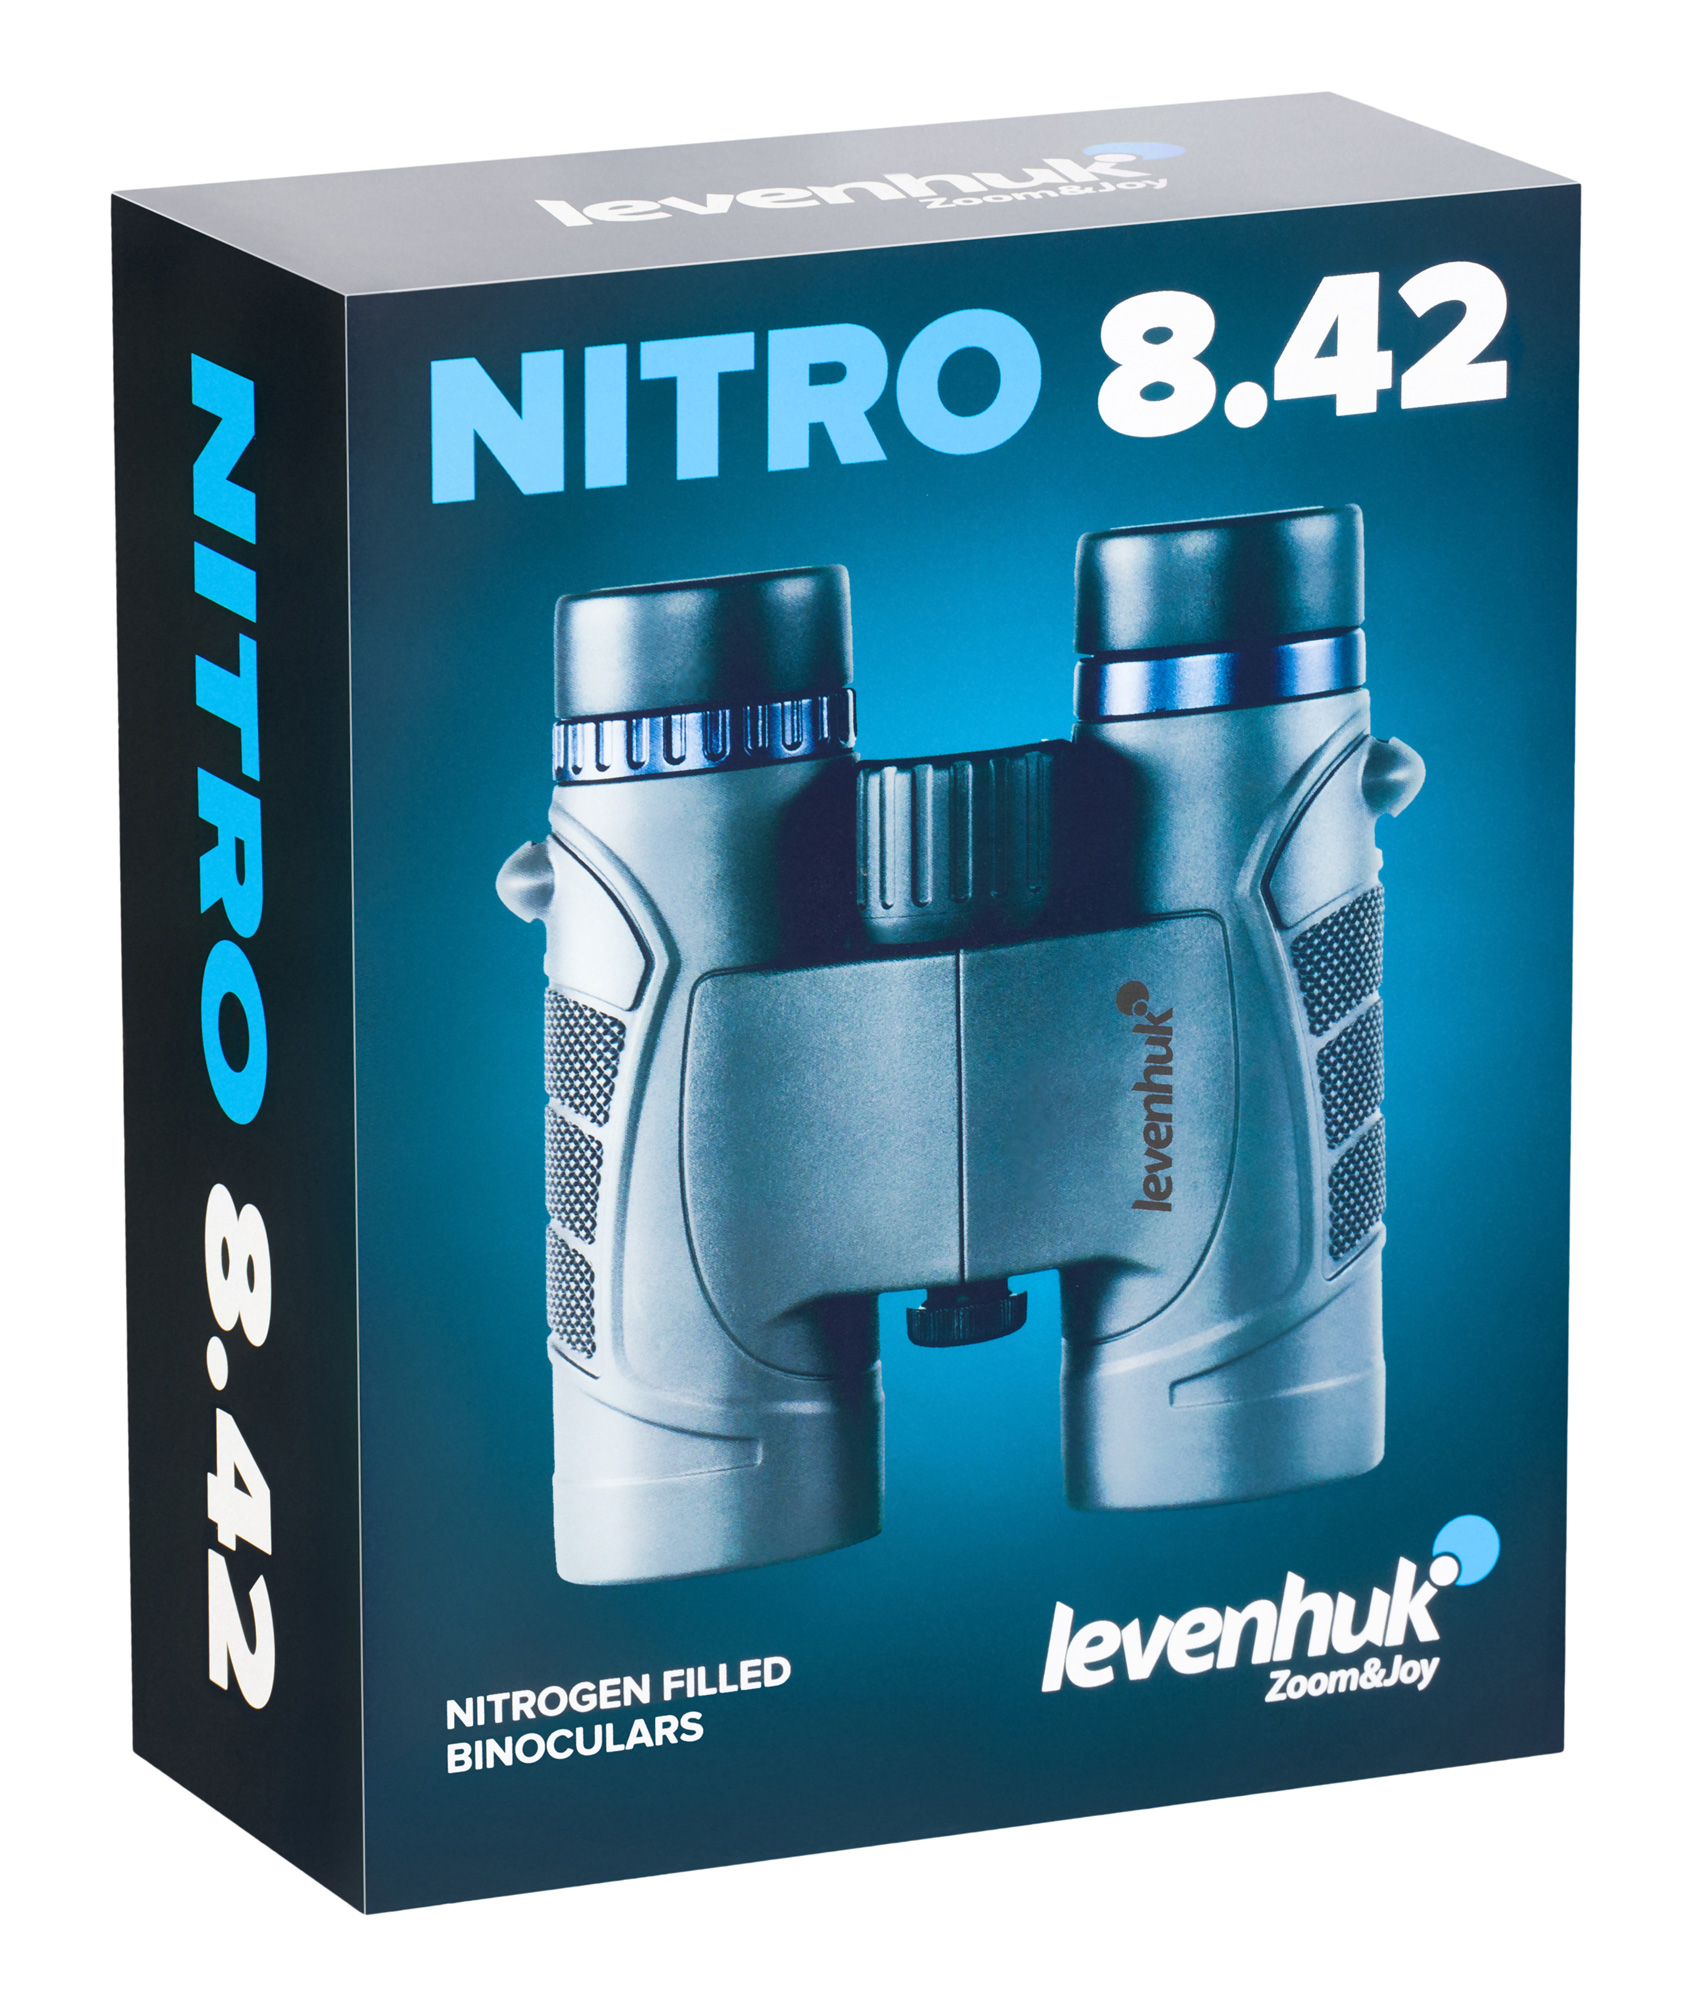 Бинокль Levenhuk Nitro 8x42 купить по оптимальной цене,  доставка по России, гарантия качества